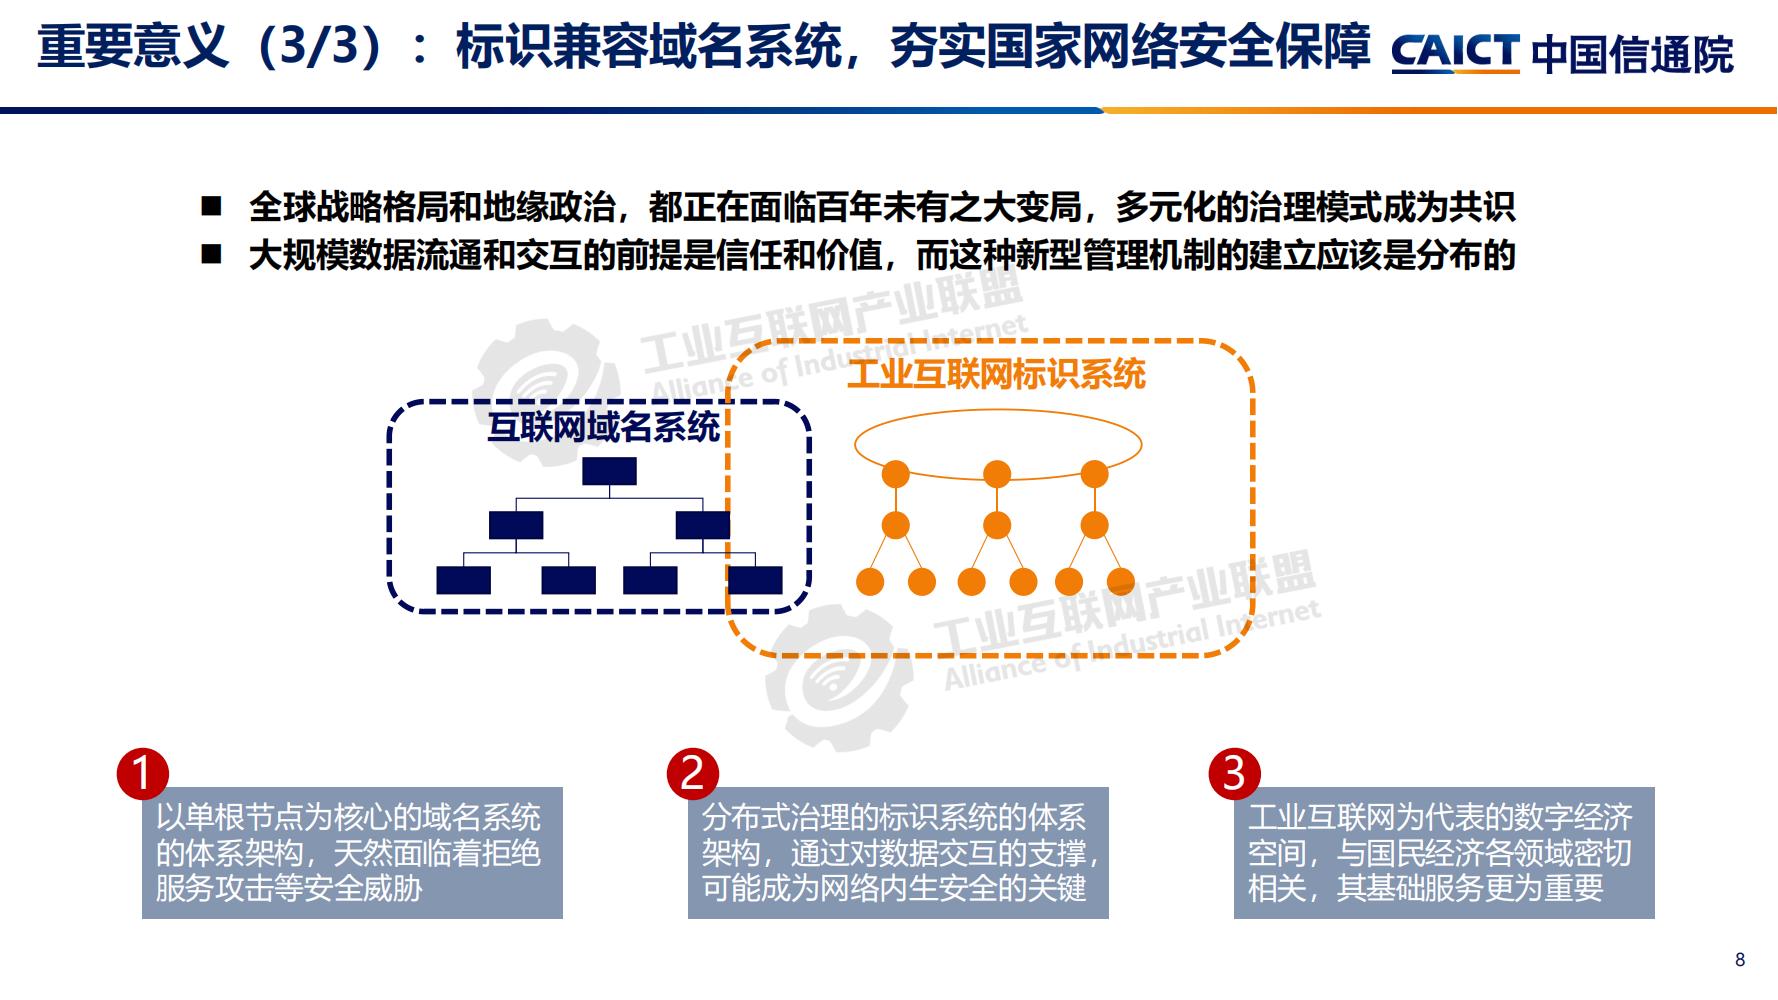 4-工业互联网标识解析体系建设进展（深圳）12-16(1)-水印_07.jpg